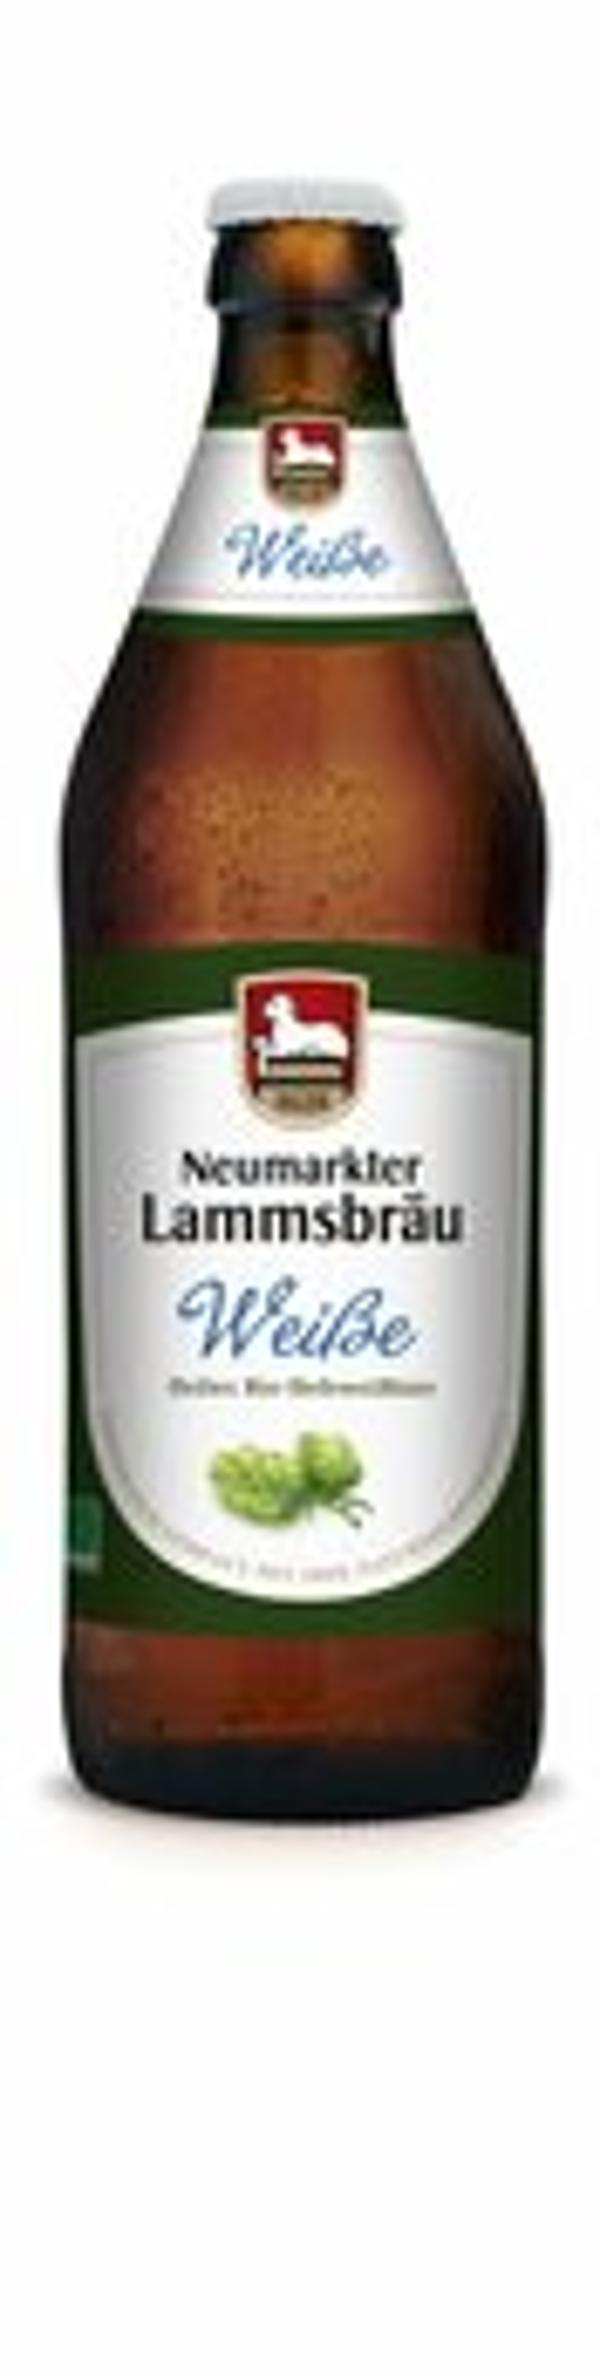 Produktfoto zu Lammsbräu Hefeweizen hell 0,5l